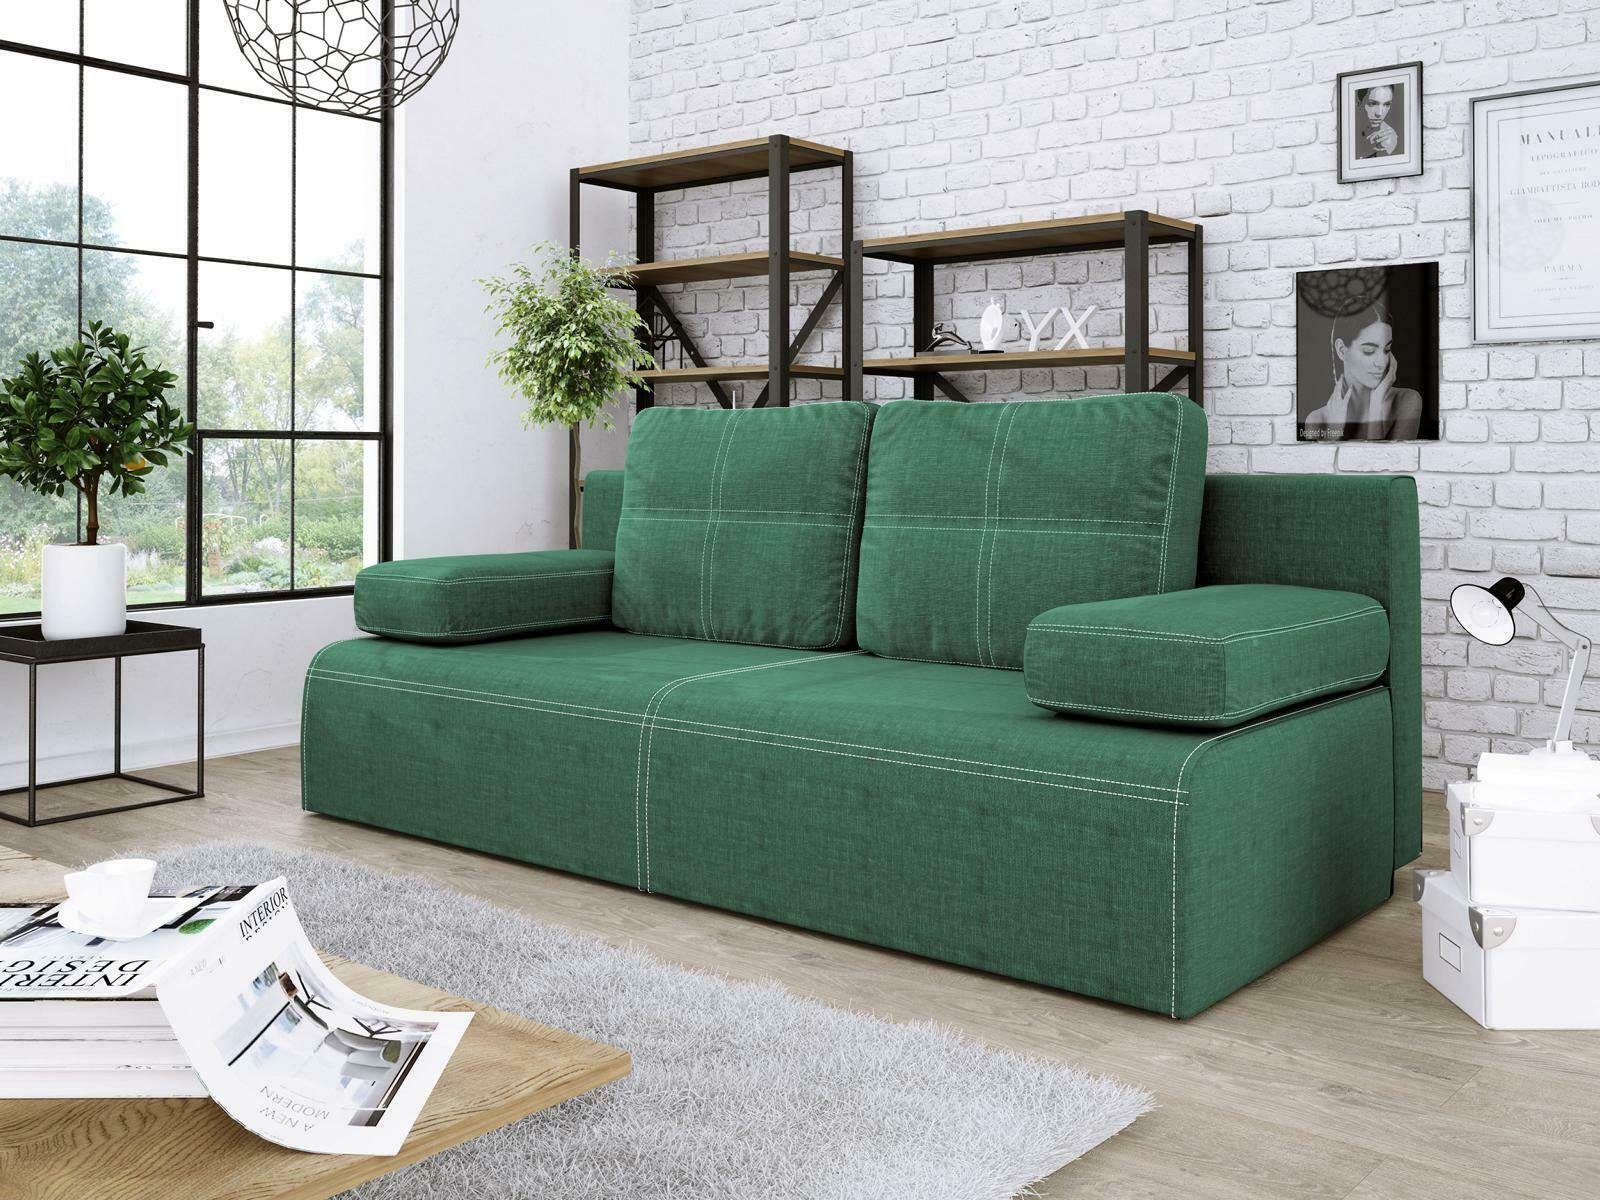 JVmoebel Sofa Grüner Dreisitzer Stoffsofa Luxus Made Design Couch Möbel in Neu, Europe